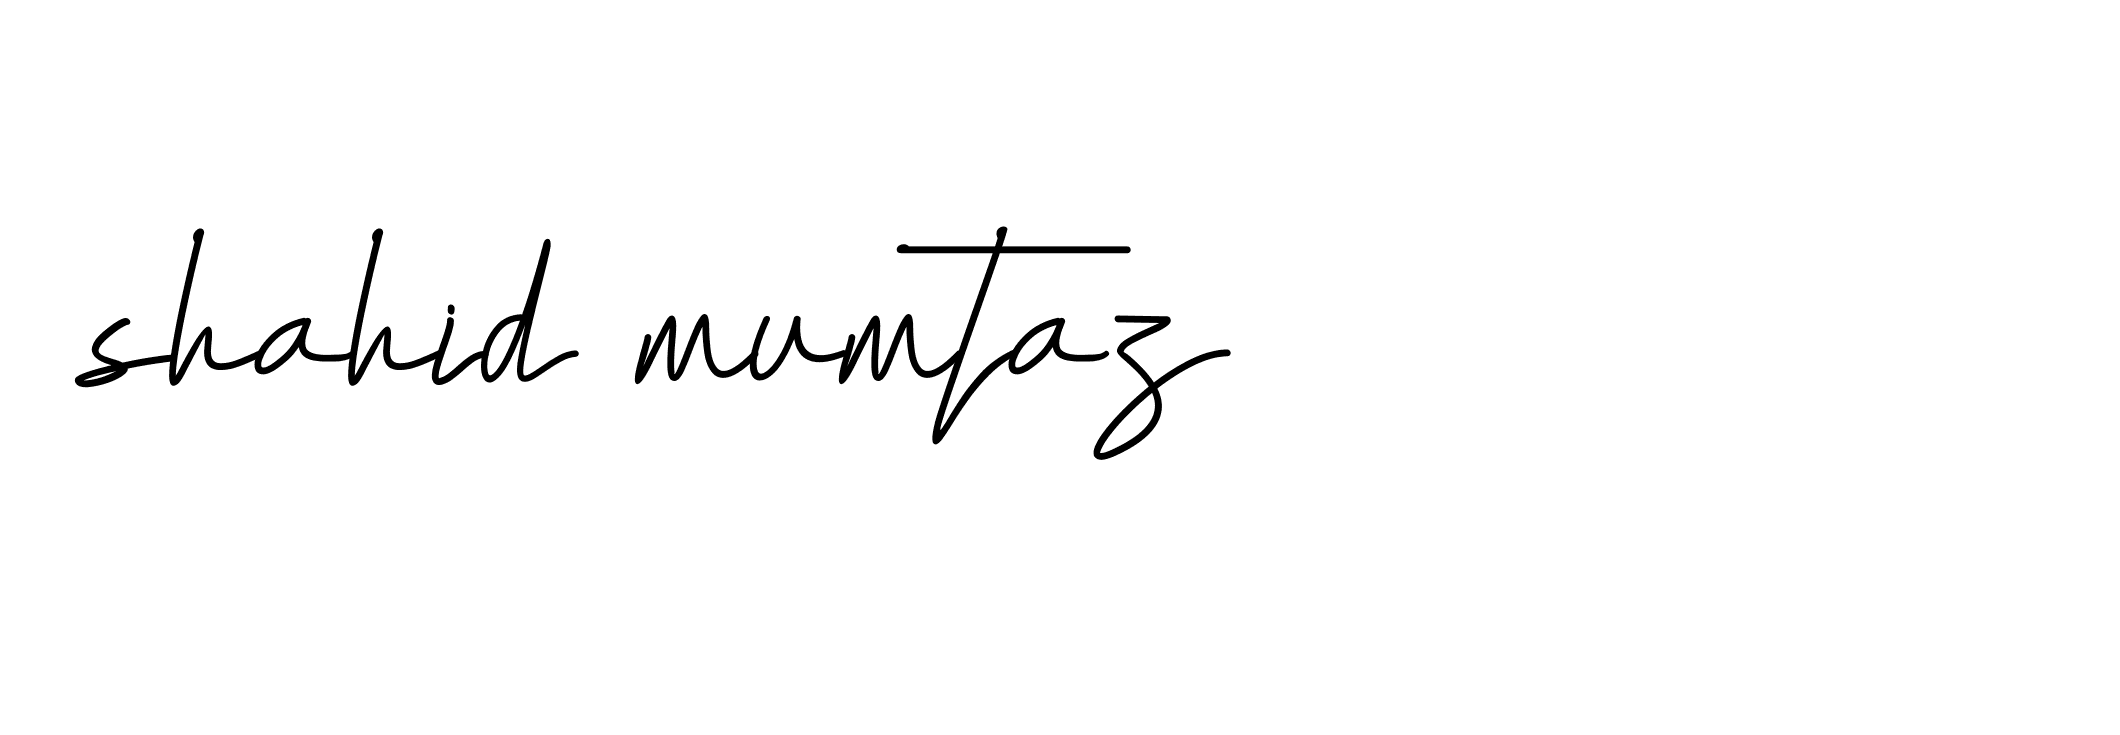 96+ Shahid-mumtaz- Name Signature Style Ideas | Amazing Online Signature